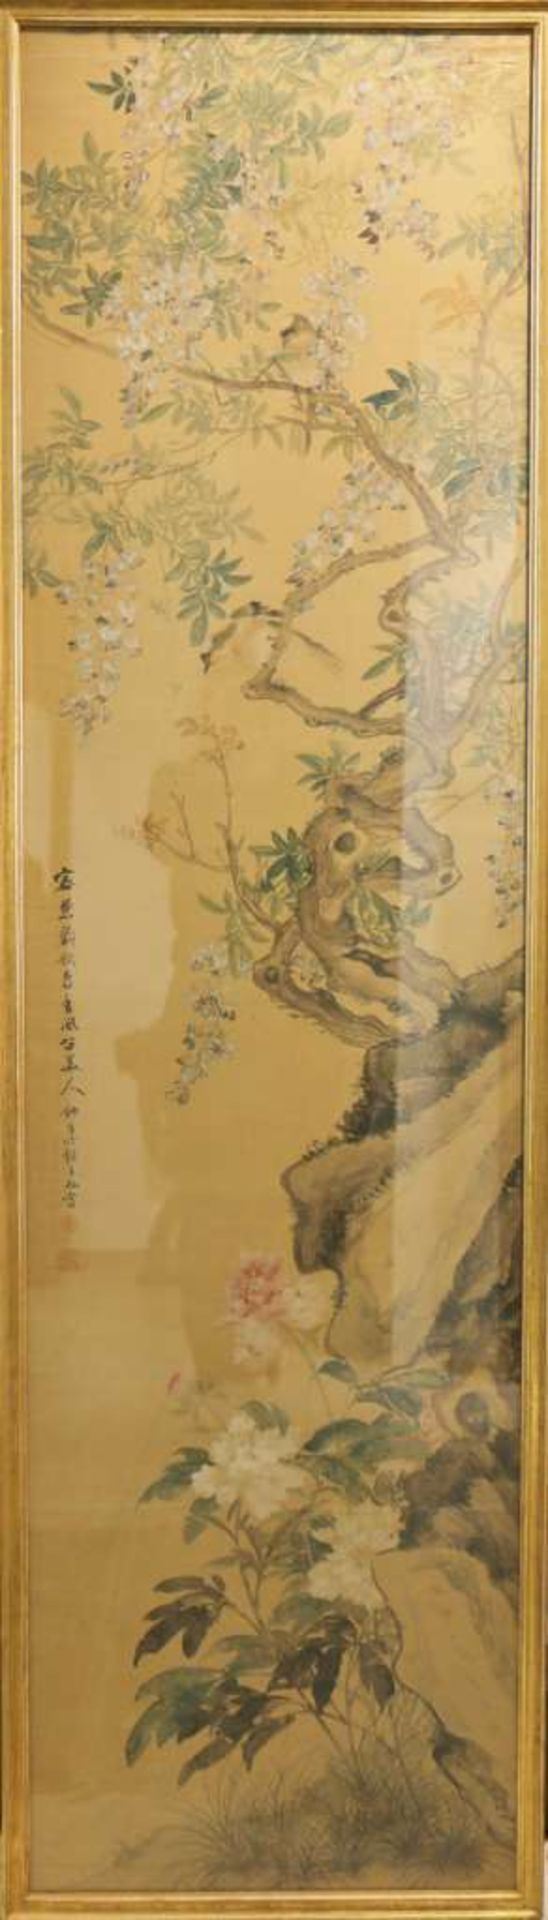 Kakemono, Tuschezeichnung, wohl Edo Zeit, in der Art des Tachihara KYOSHO (1786-1840), dargestellt - Image 2 of 5